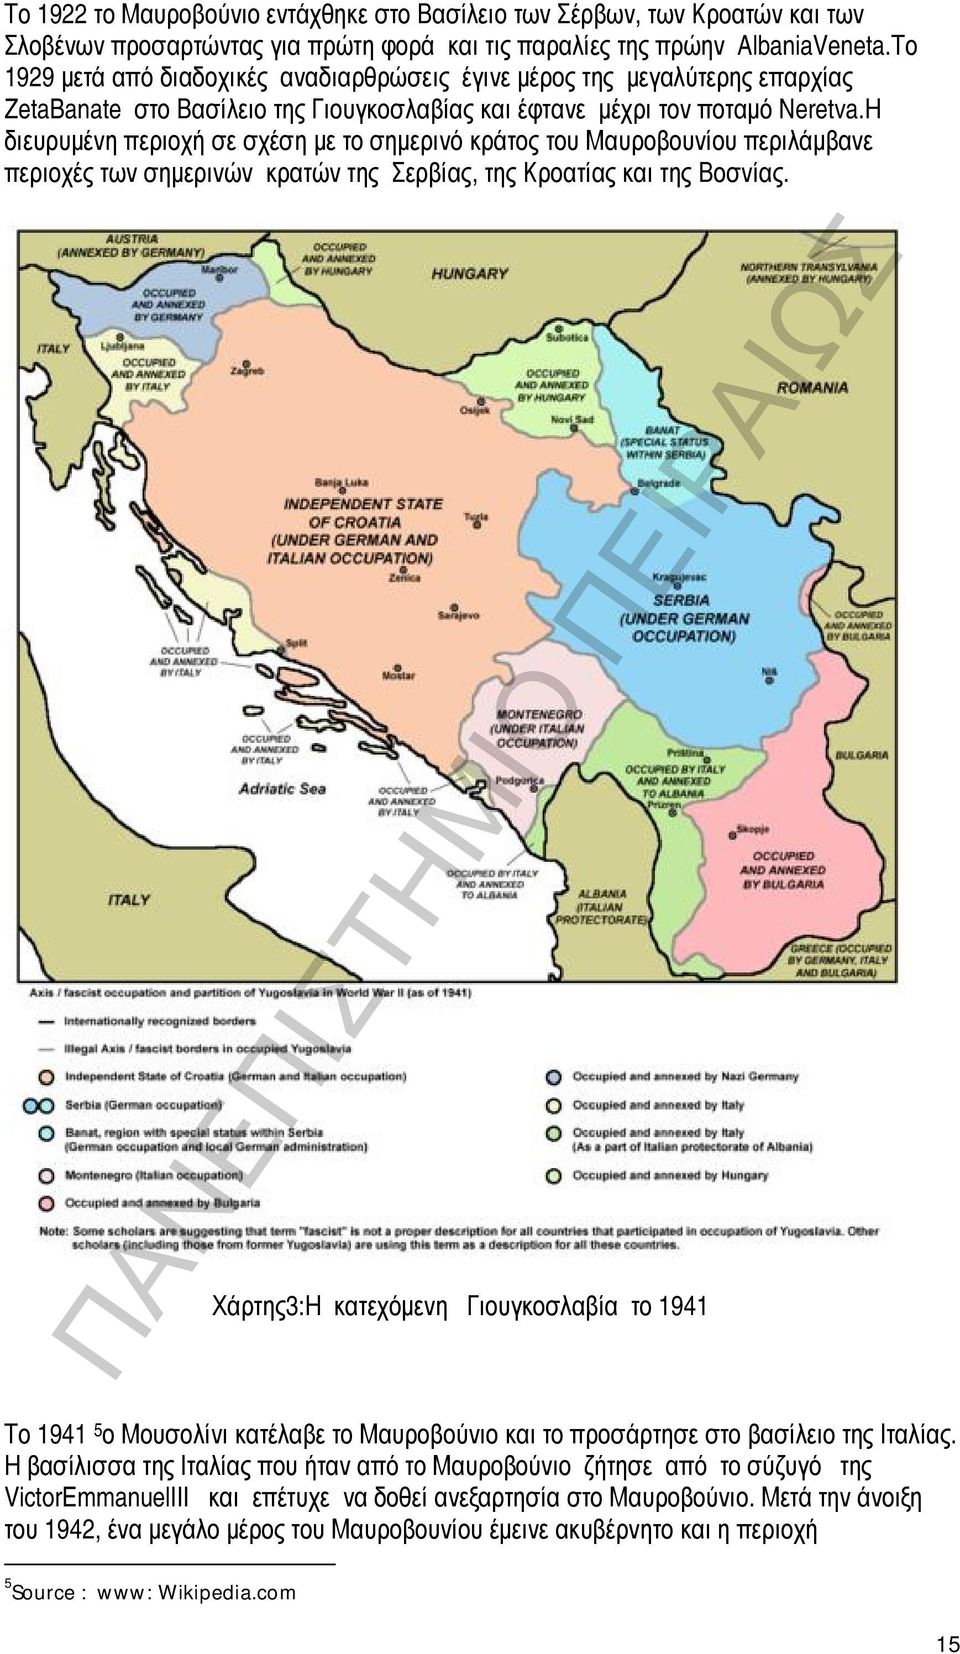 Η διευρυμένη περιοχή σε σχέση με το σημερινό κράτος του Μαυροβουνίου περιλάμβανε περιοχές των σημερινών κρατών της Σερβίας, της Κροατίας και της Βοσνίας.